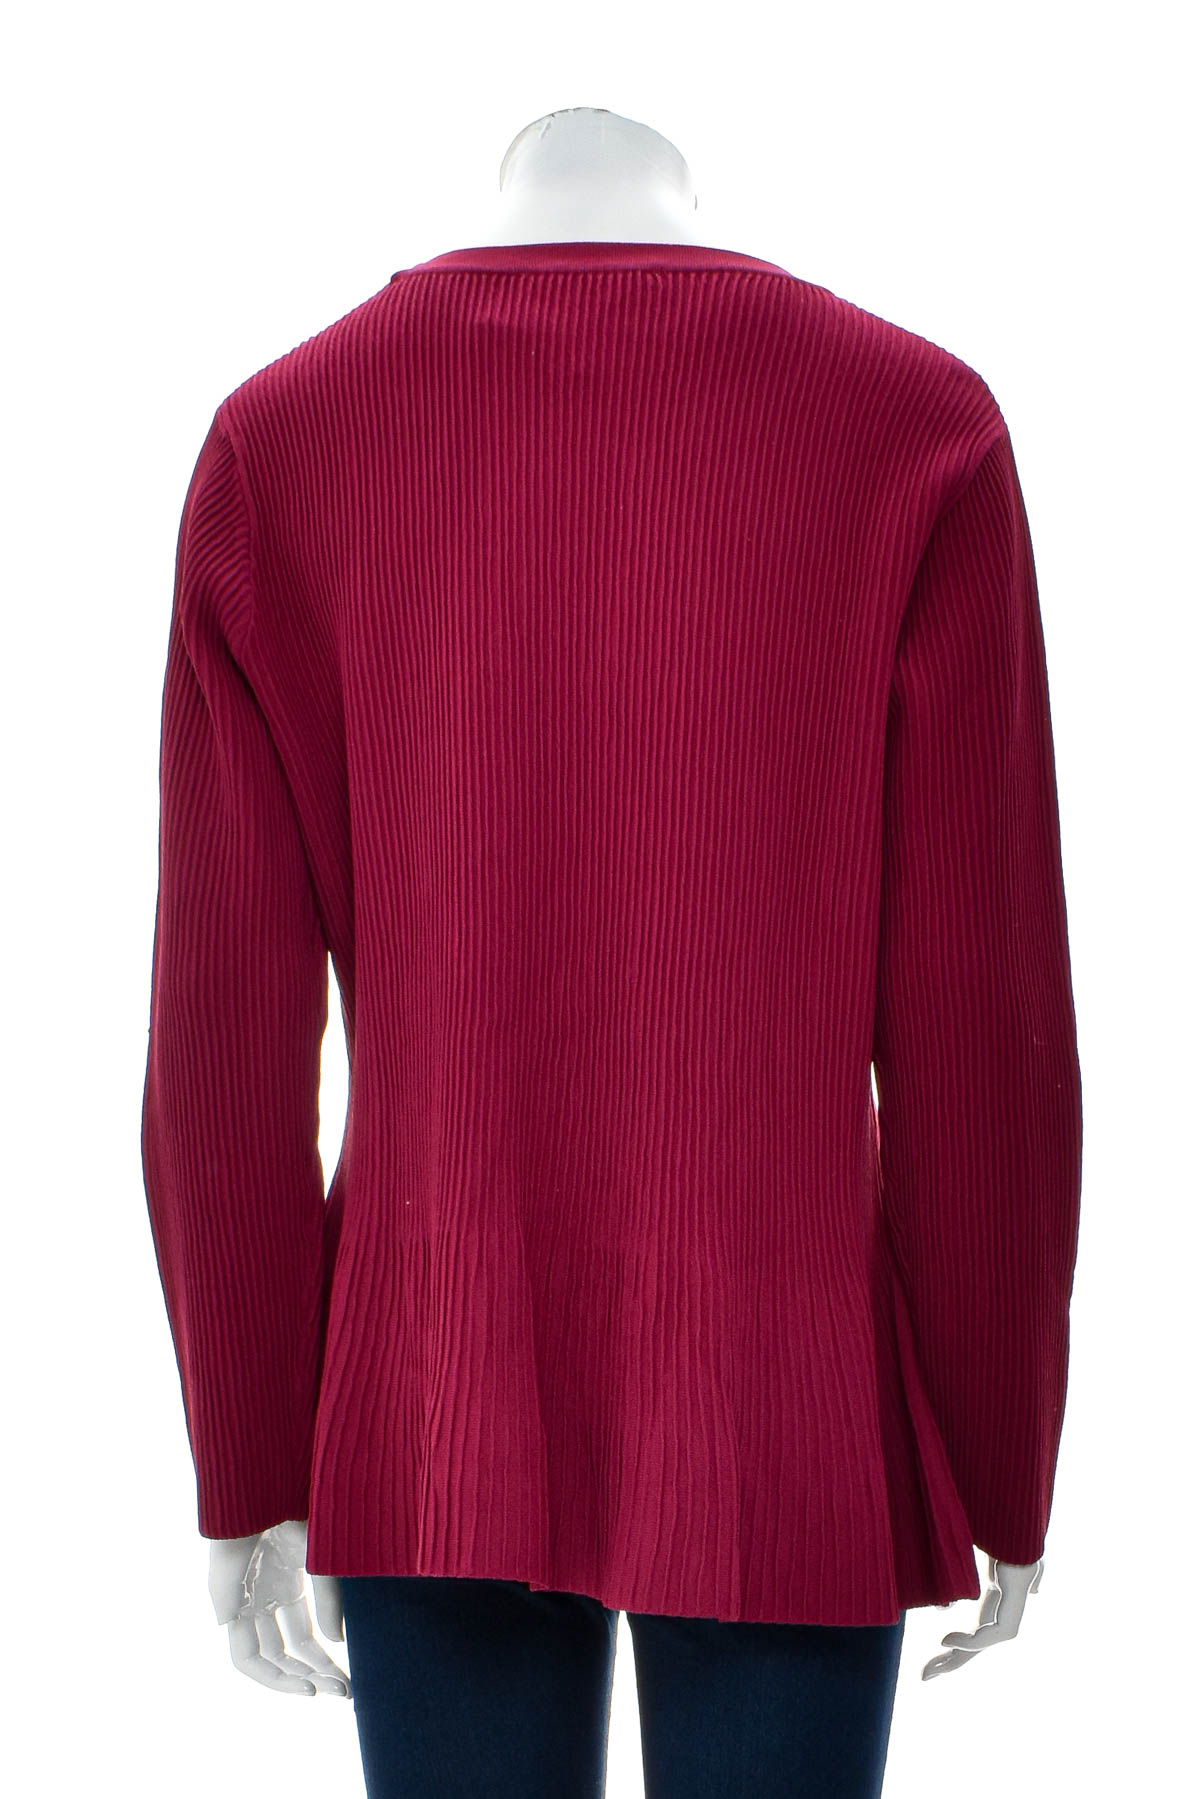 Women's sweater - Heine - 1